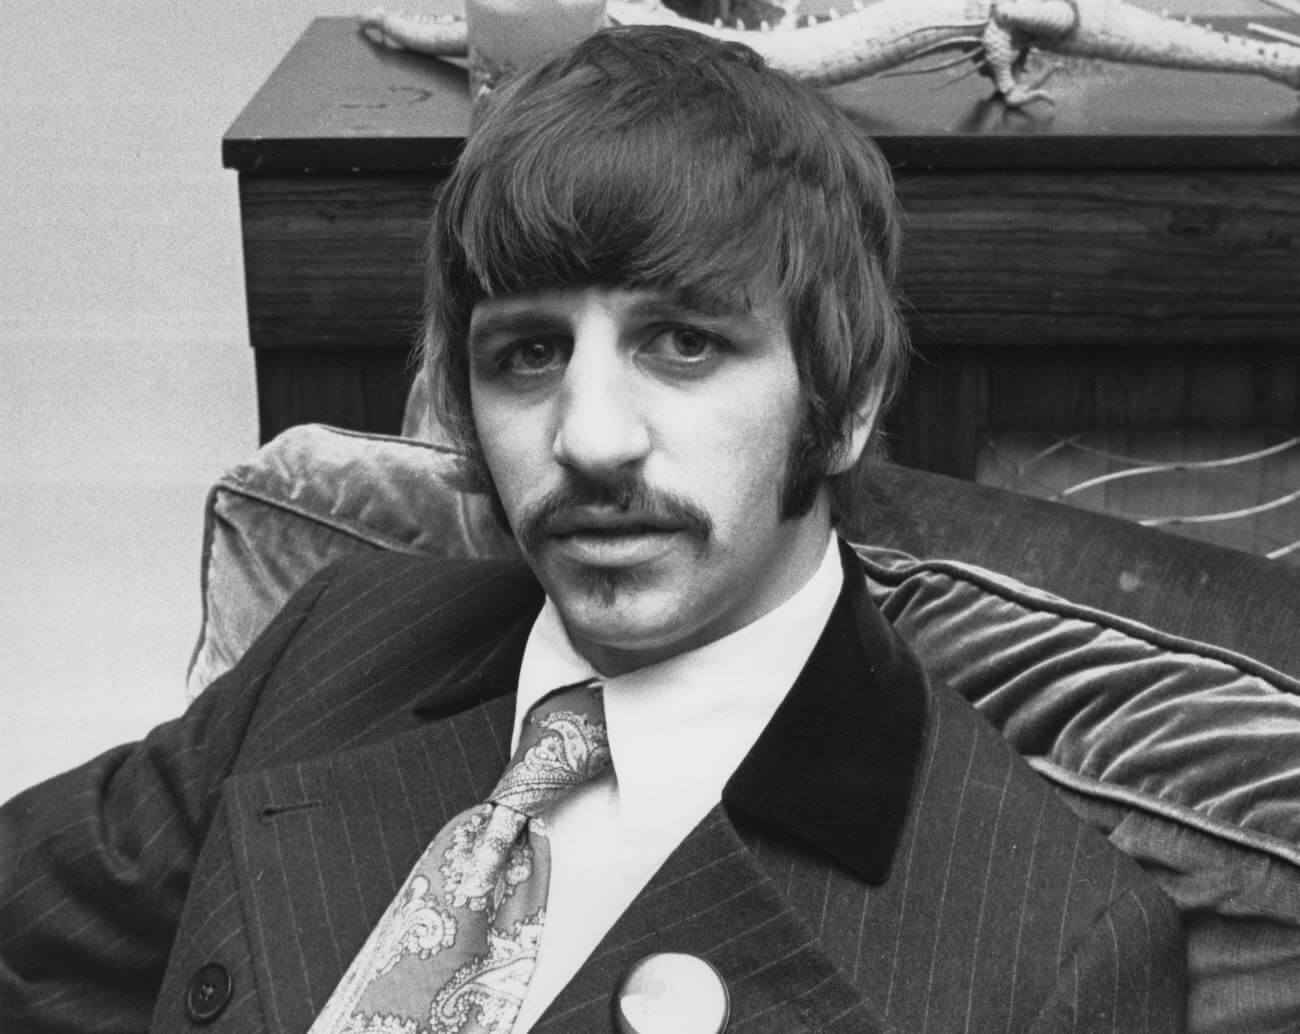 Ringo Starr Memohon Pulang ke Ibunya Setelah Konser Beatles yang Menakutkan